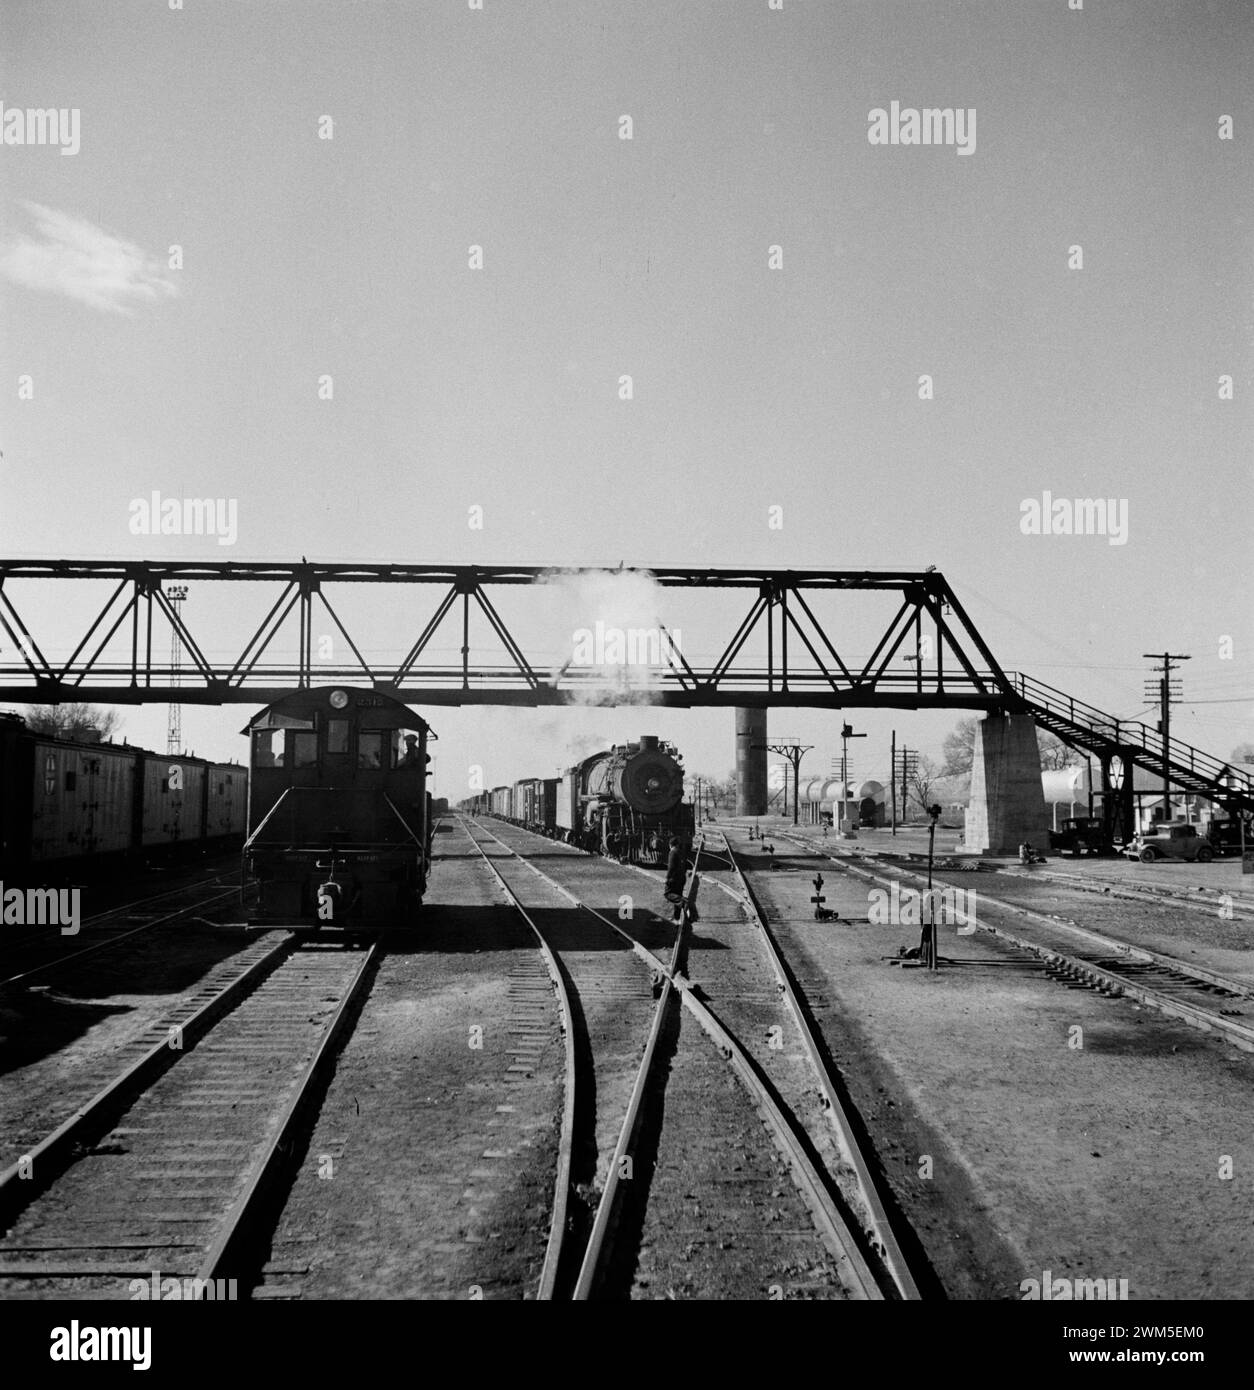 Belen, Nouveau-Mexique. Dans la gare ferroviaire d'Atchison, Topeka et Santa Fe. Jack Delano photo 1943 Banque D'Images